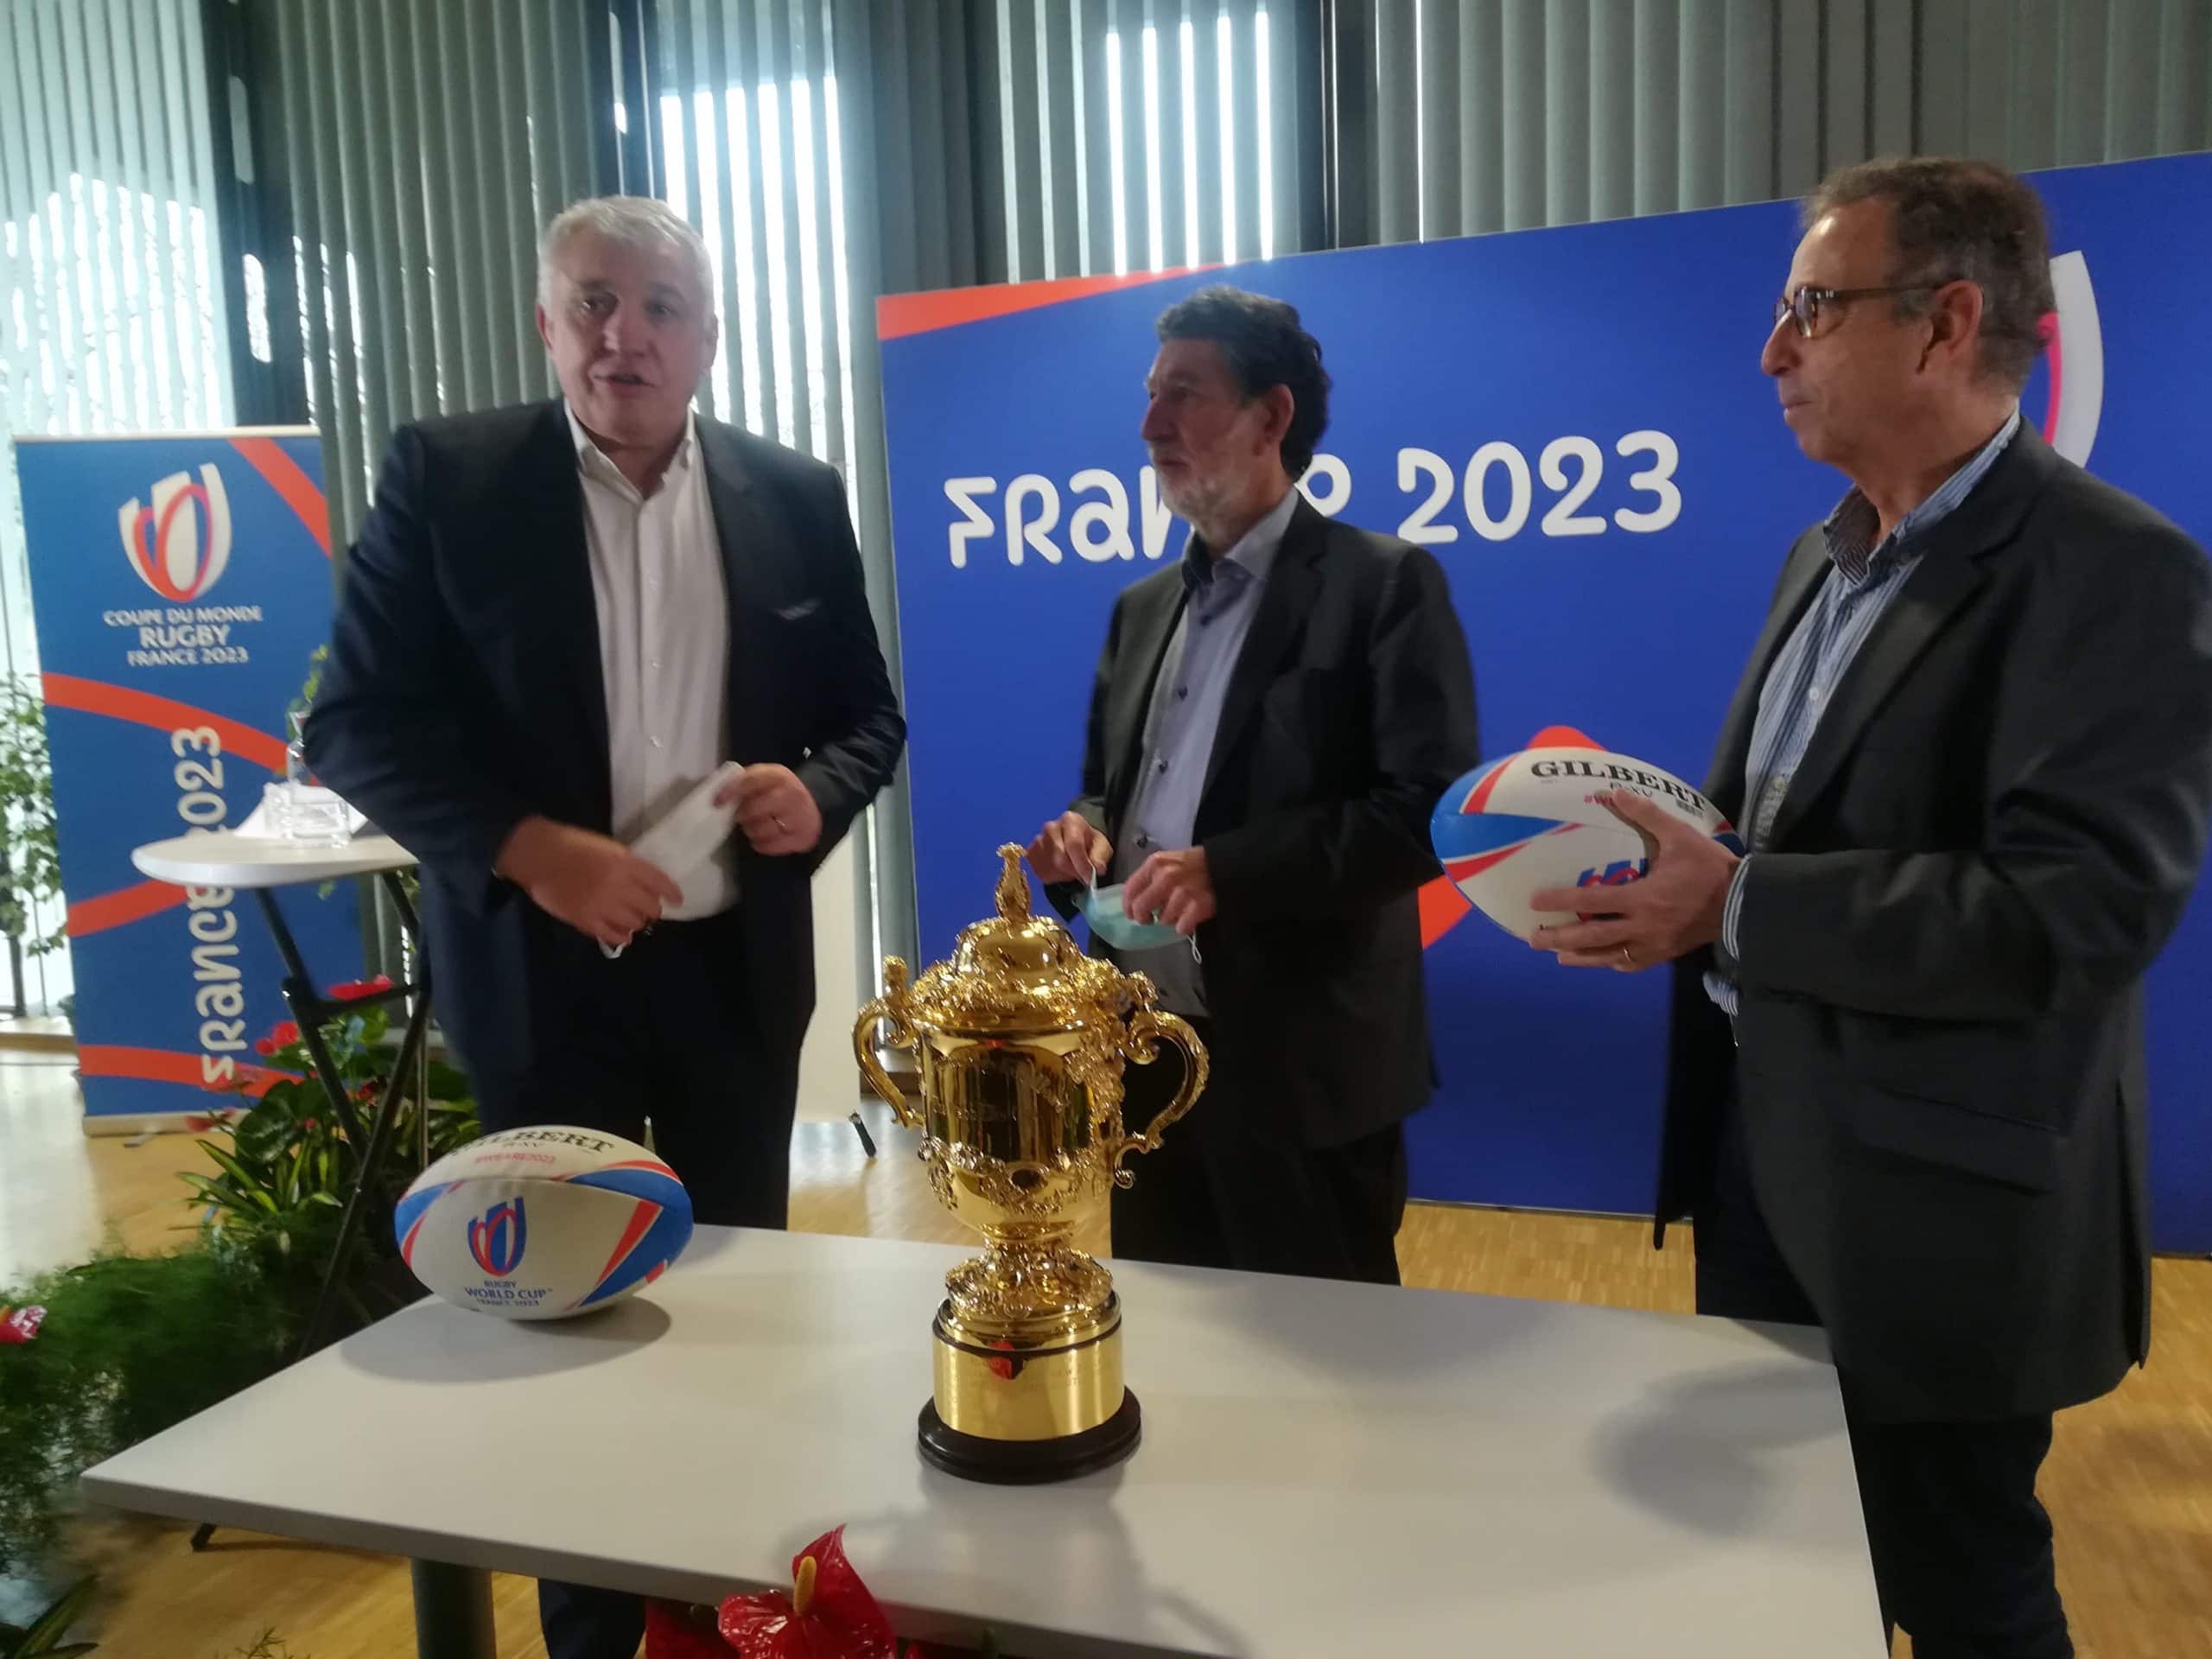 France 2023, une coupe du monde de rugby plus verte et moins chère à Bordeaux